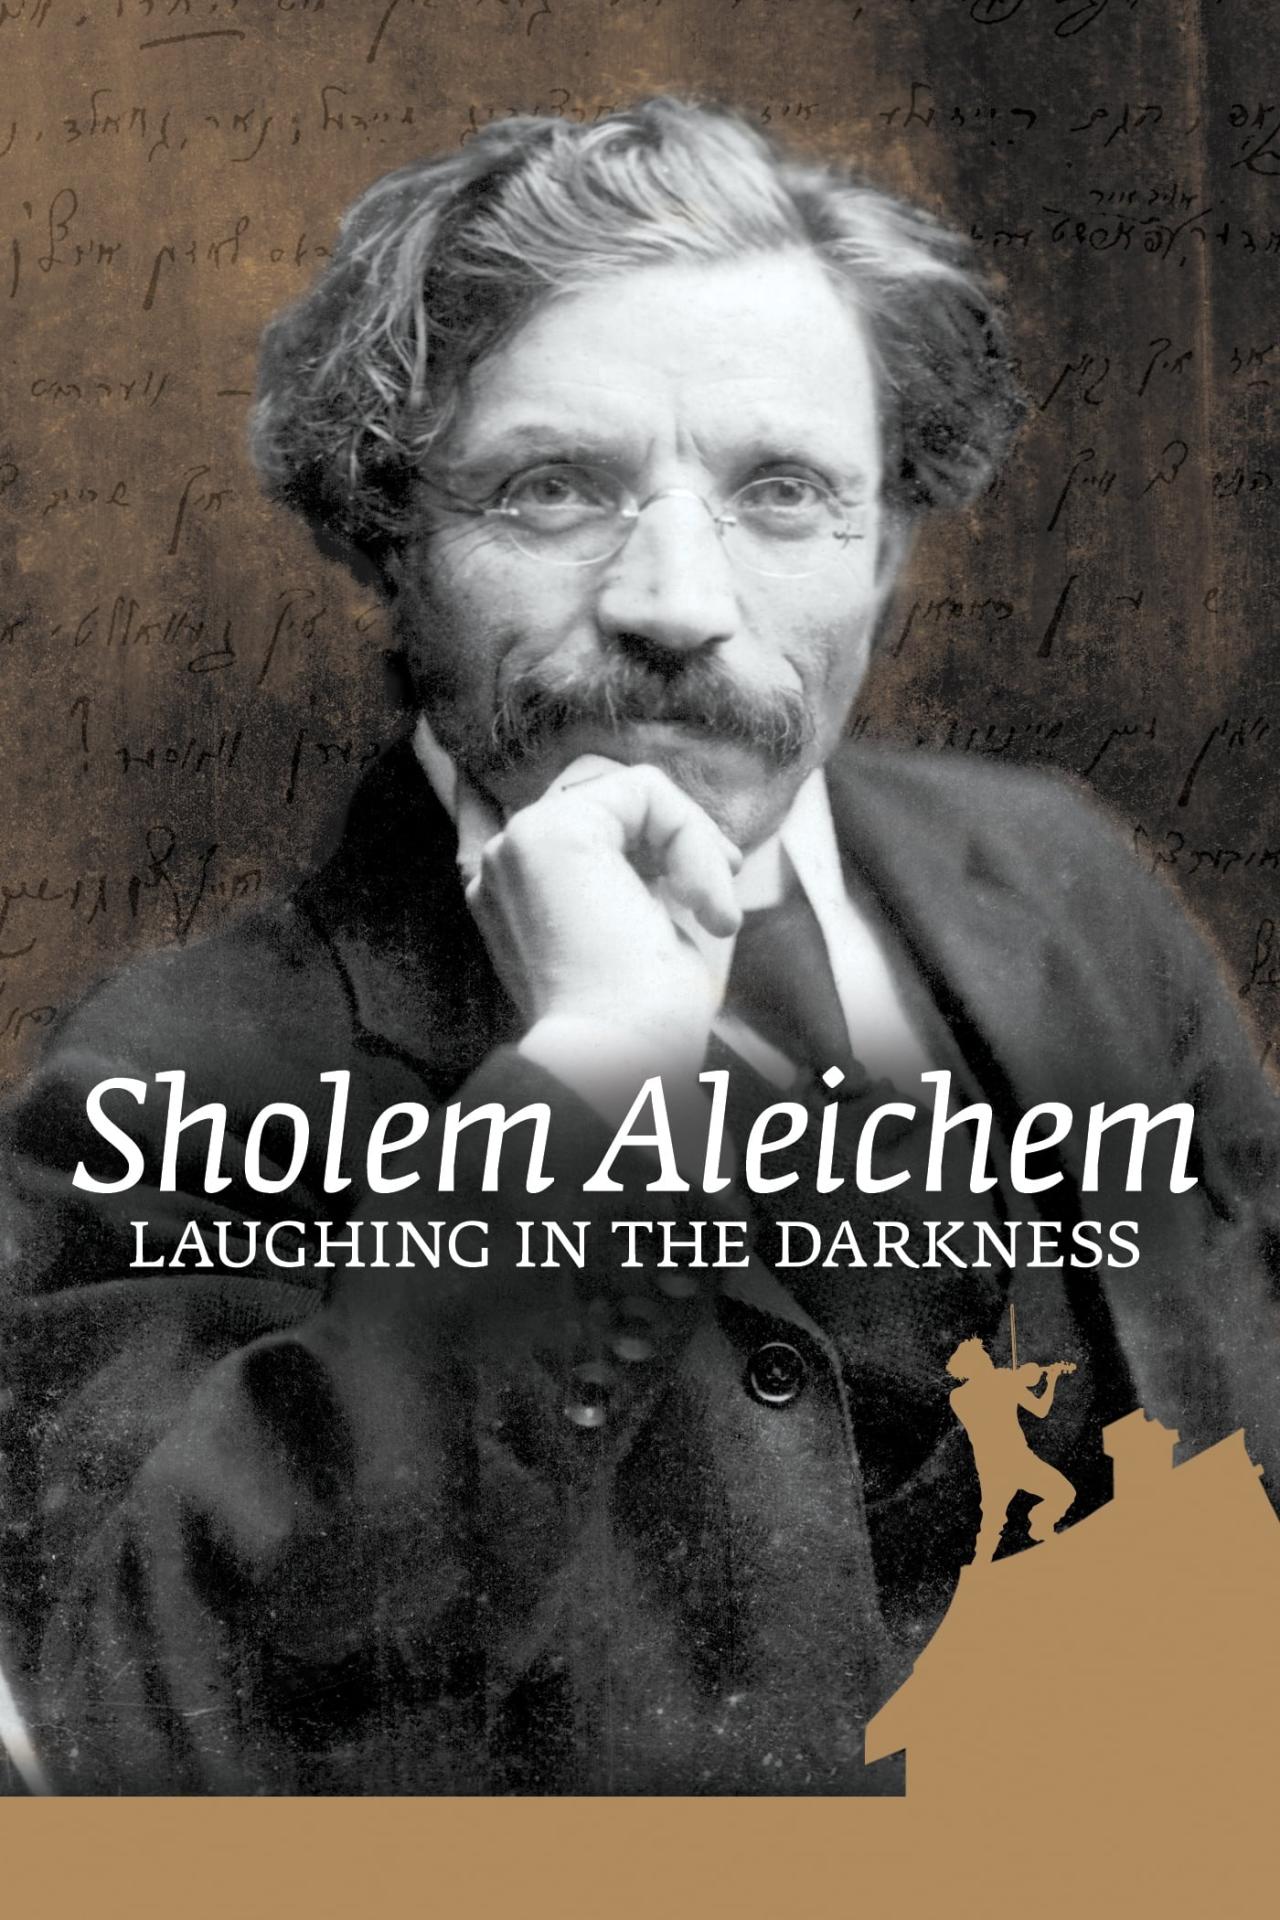 Sholem Aleichem: Laughing In The Darkness est-il disponible sur Netflix ou autre ?